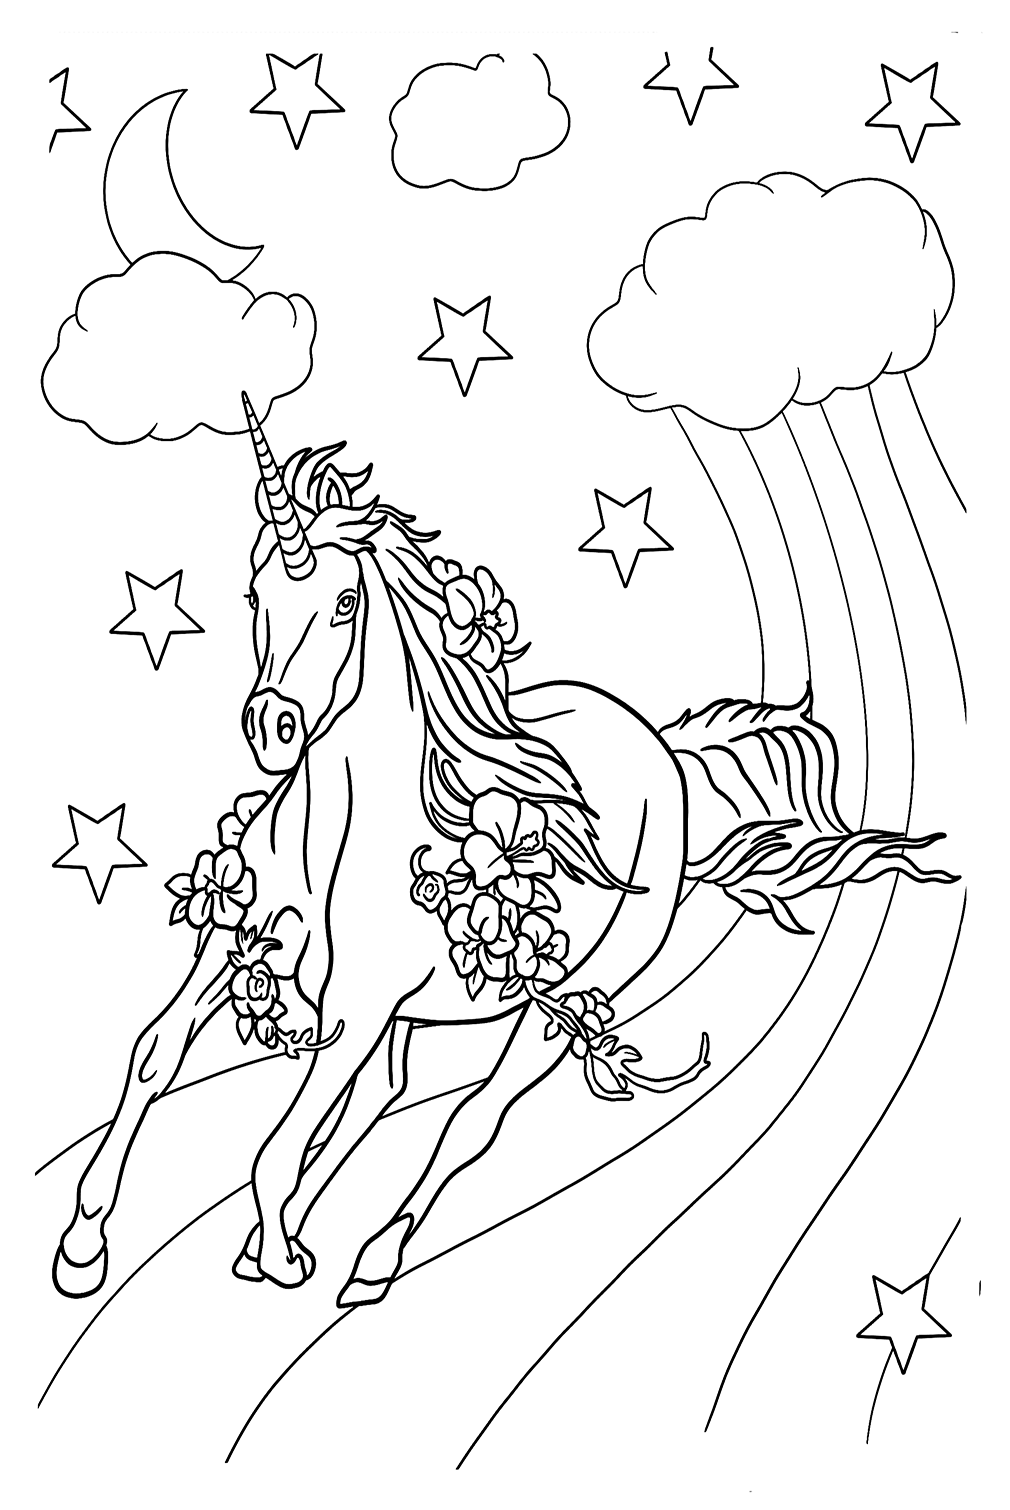 Página para colorear de Alicornio de Unicornio